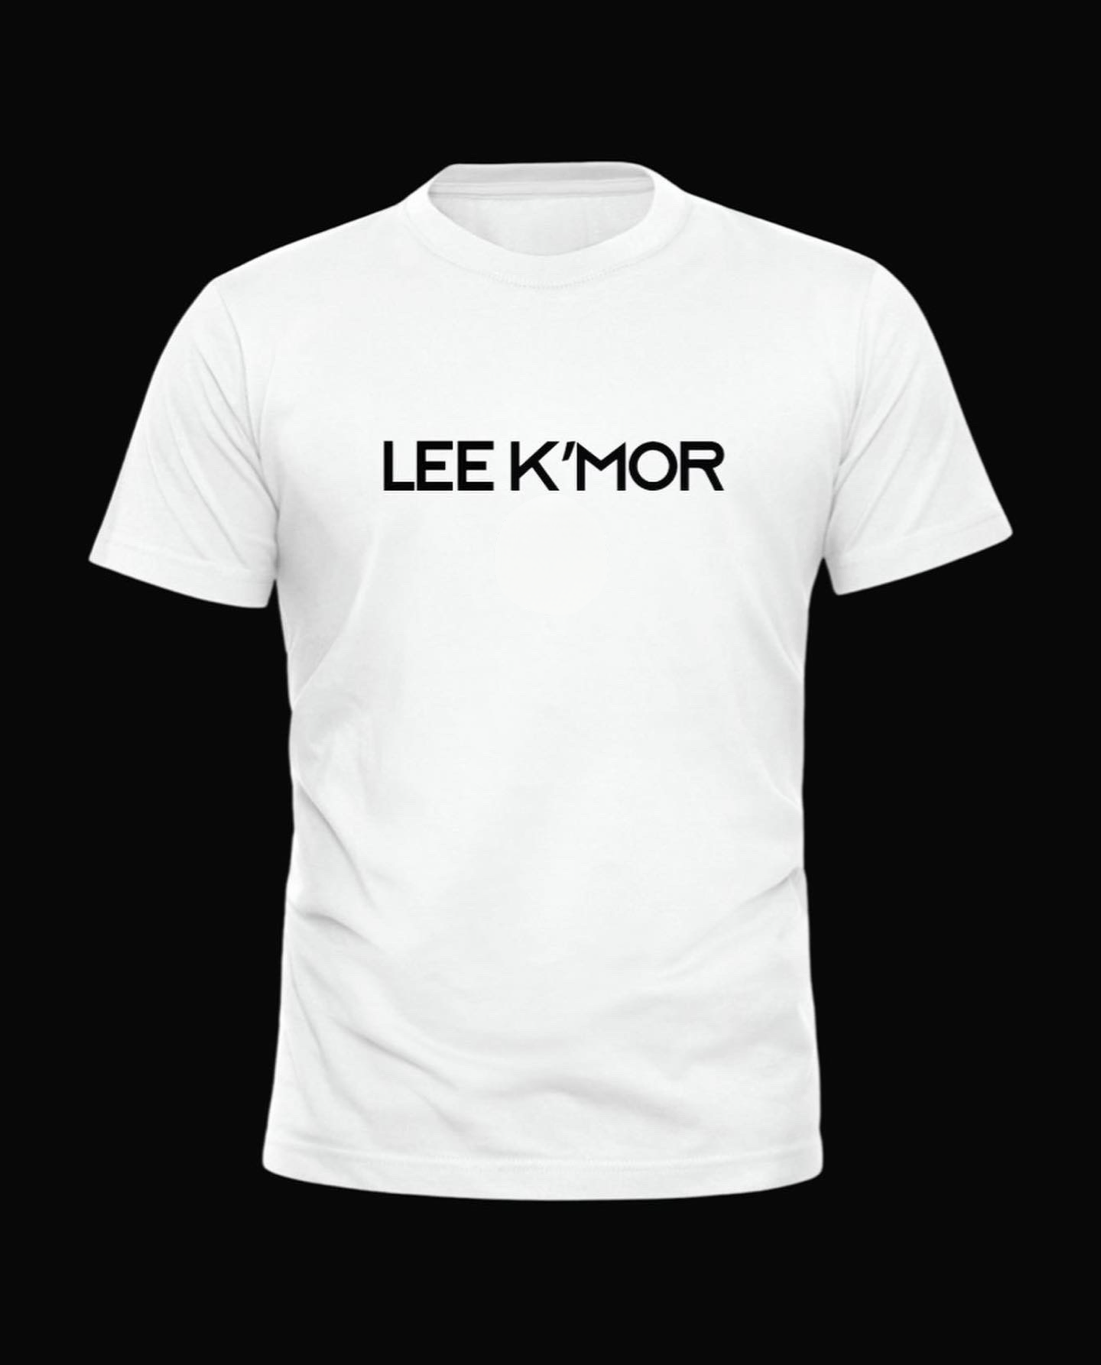 Lee Kmor logo T-Shirt